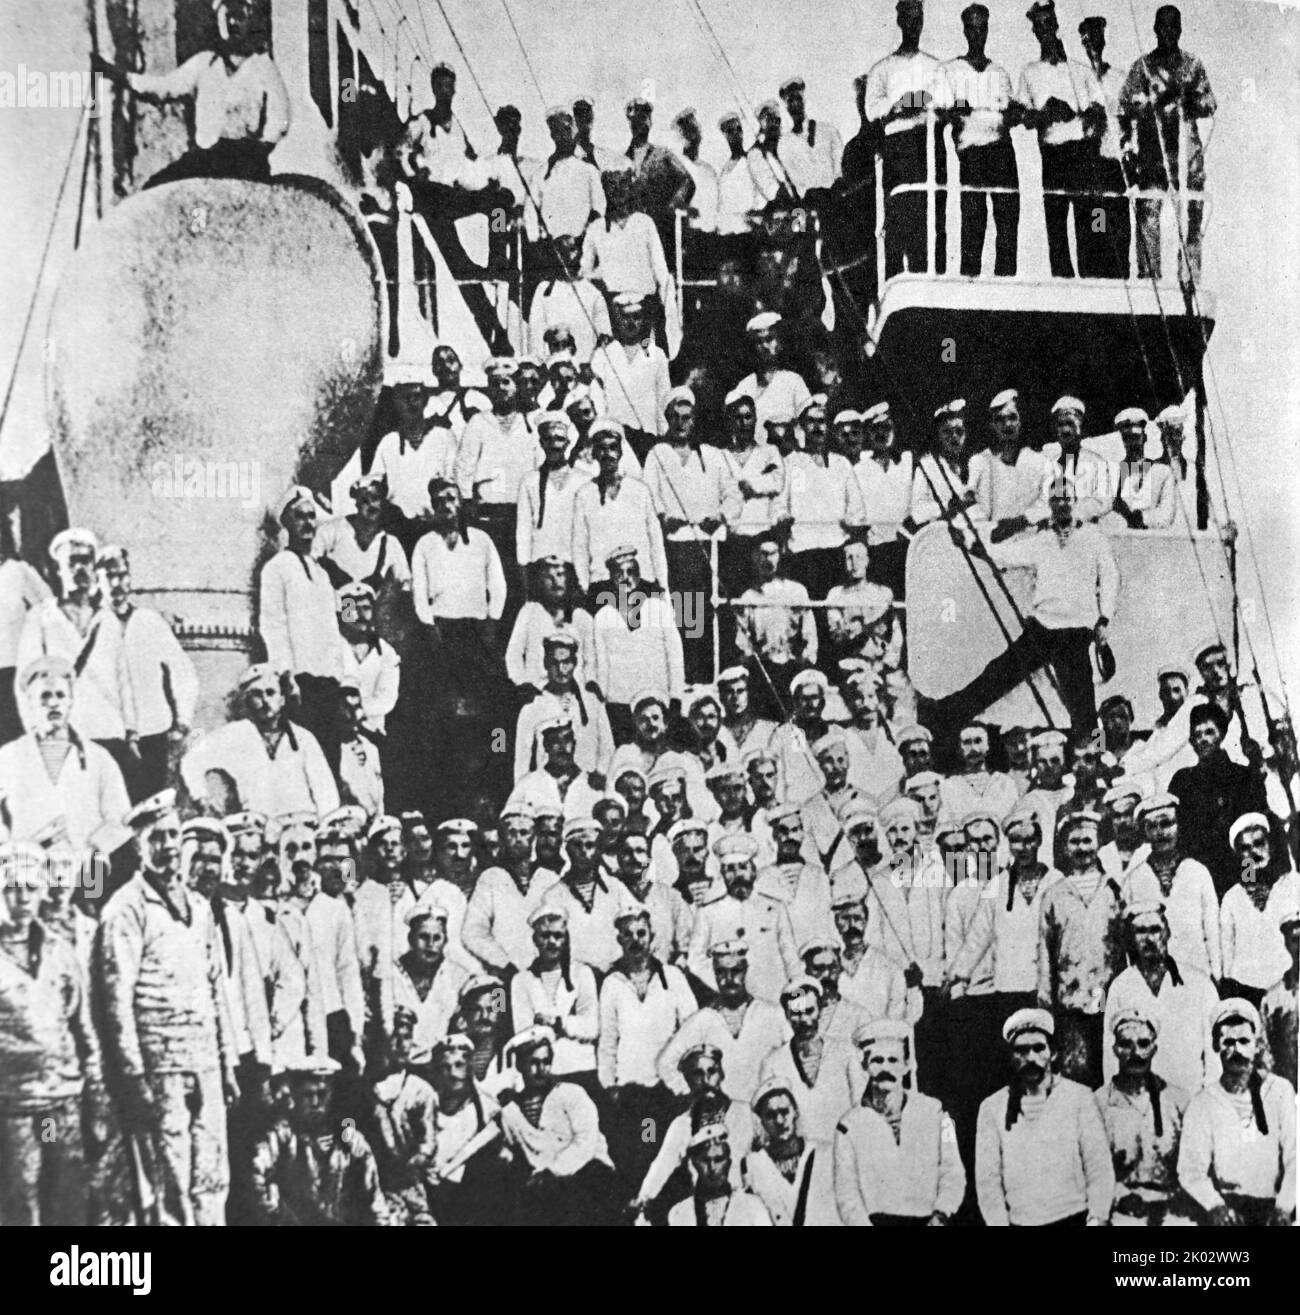 Sevastopol rivolta armata del 1905. L'equipaggio dell'incrociatore ribelle Ochakov due settimane prima della rivolta. Foto Stock